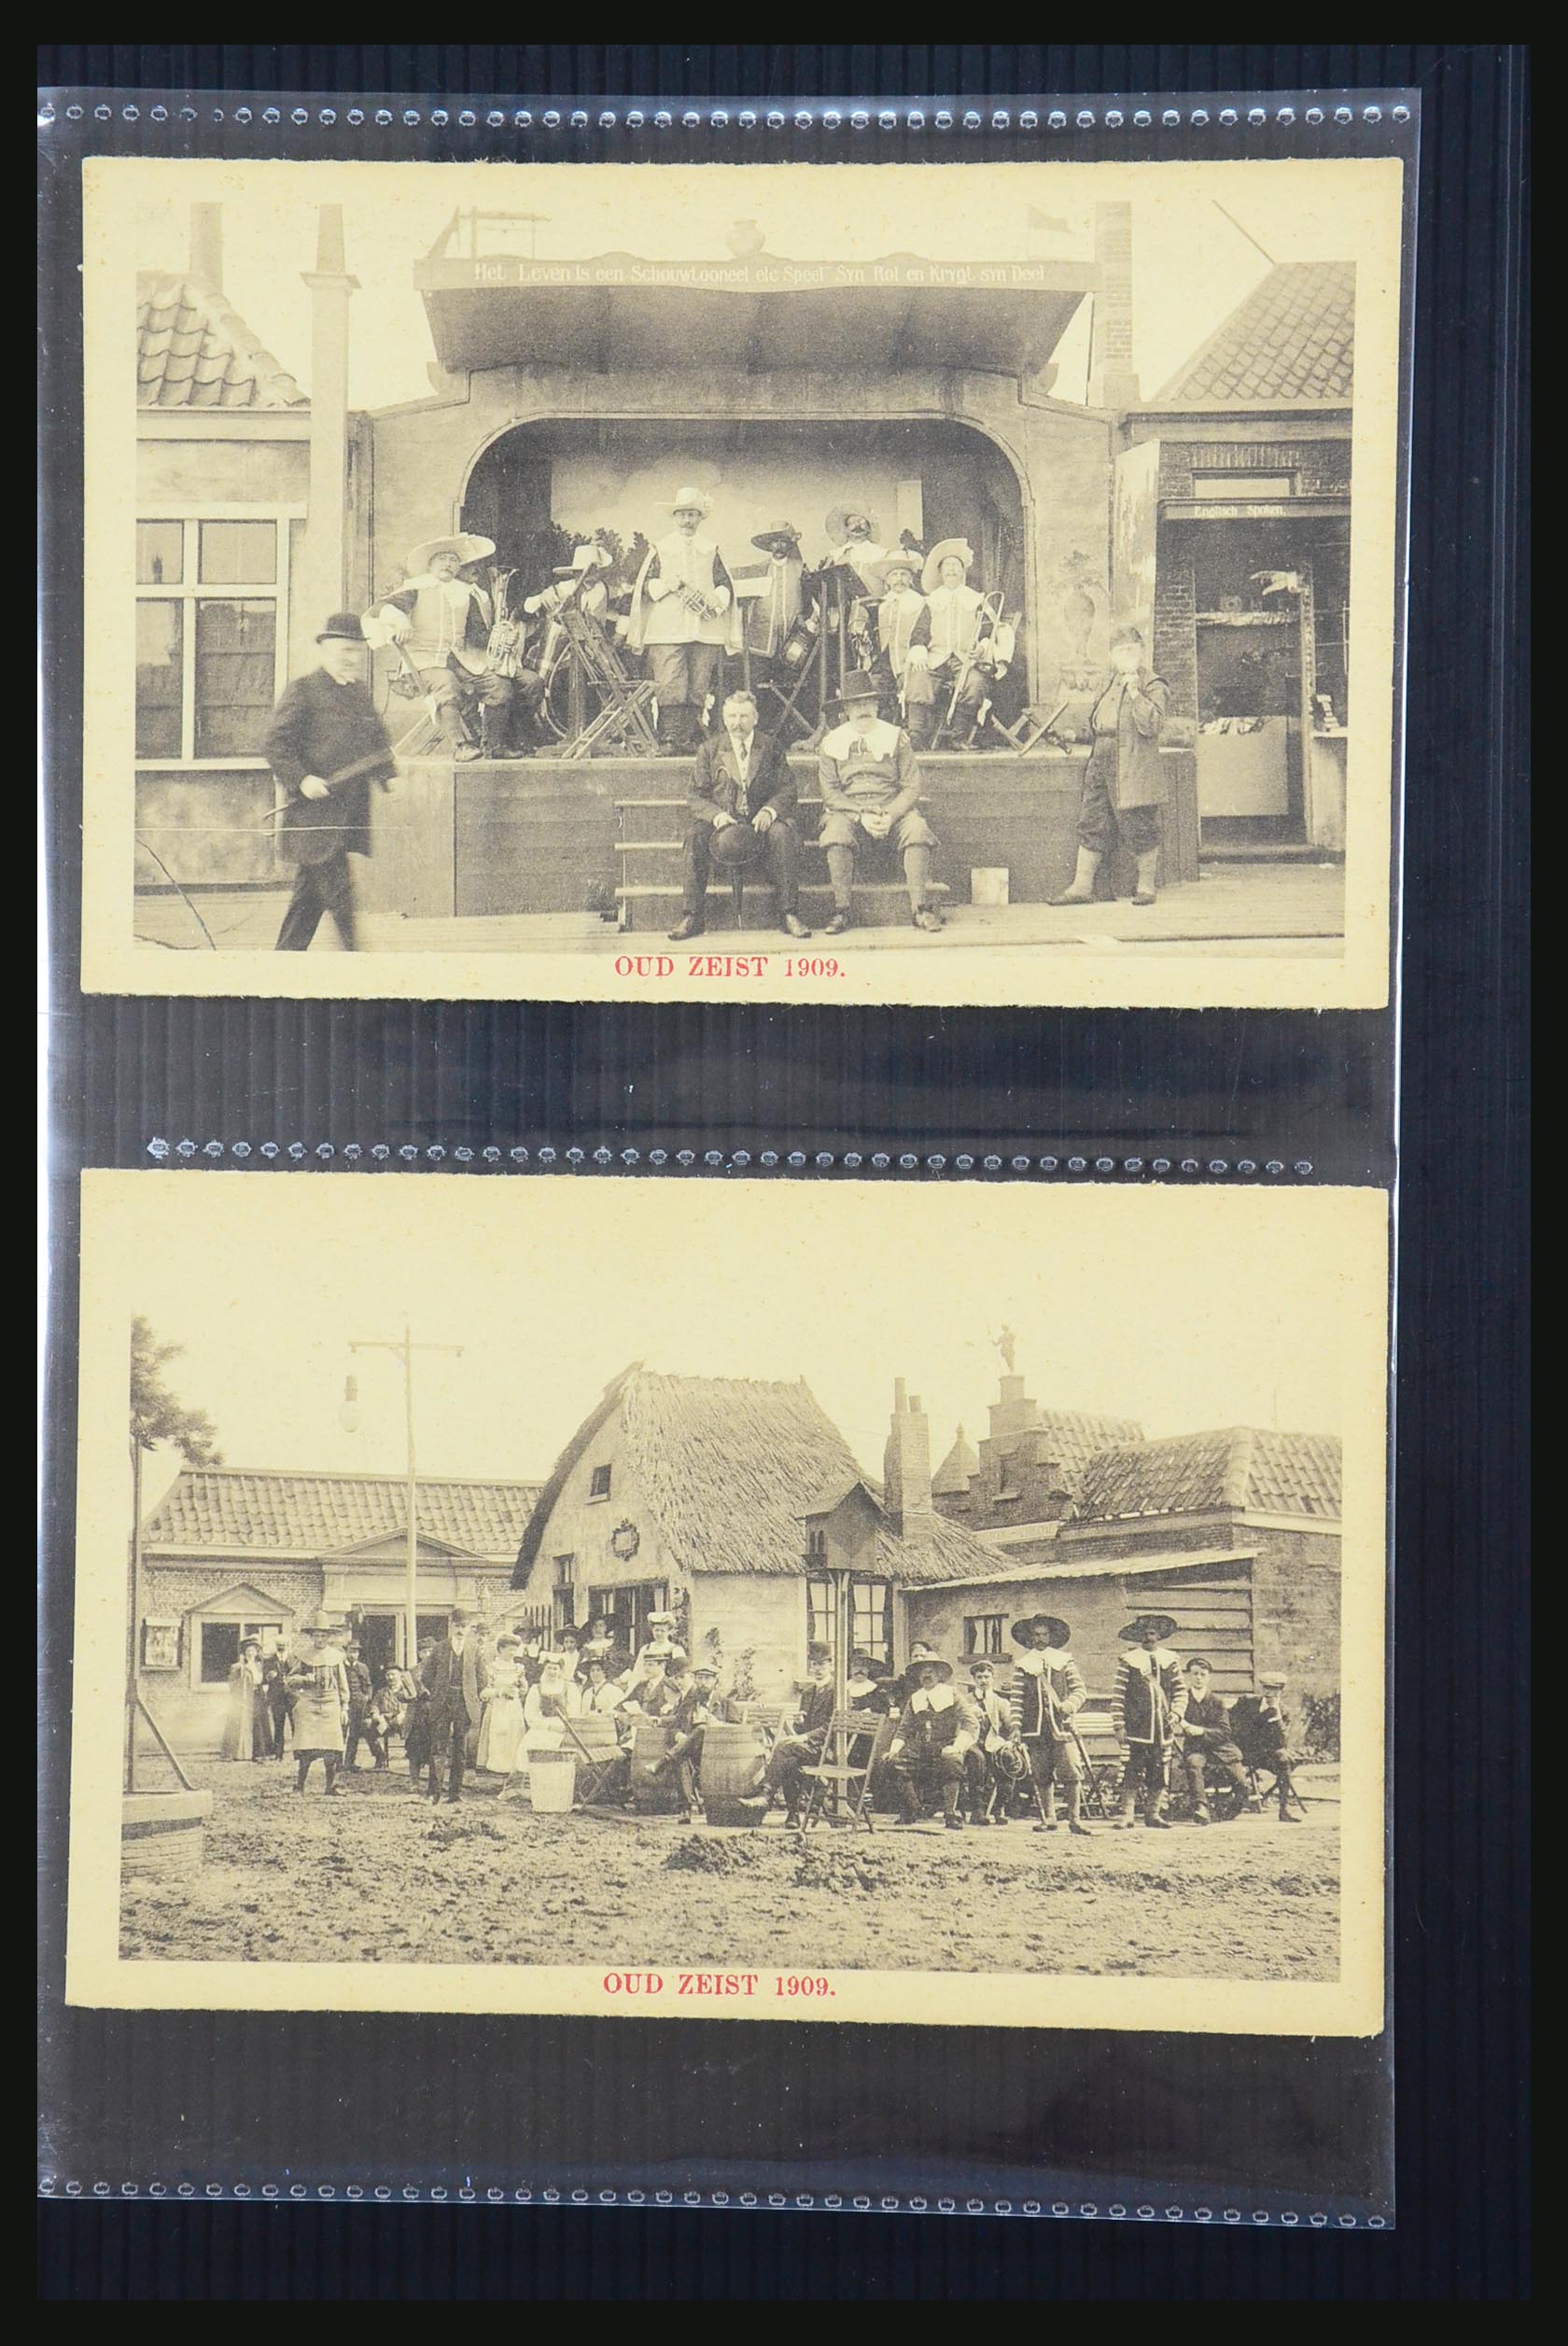 31338 061 - 31338 Nederland ansichtkaarten 1897-1914.